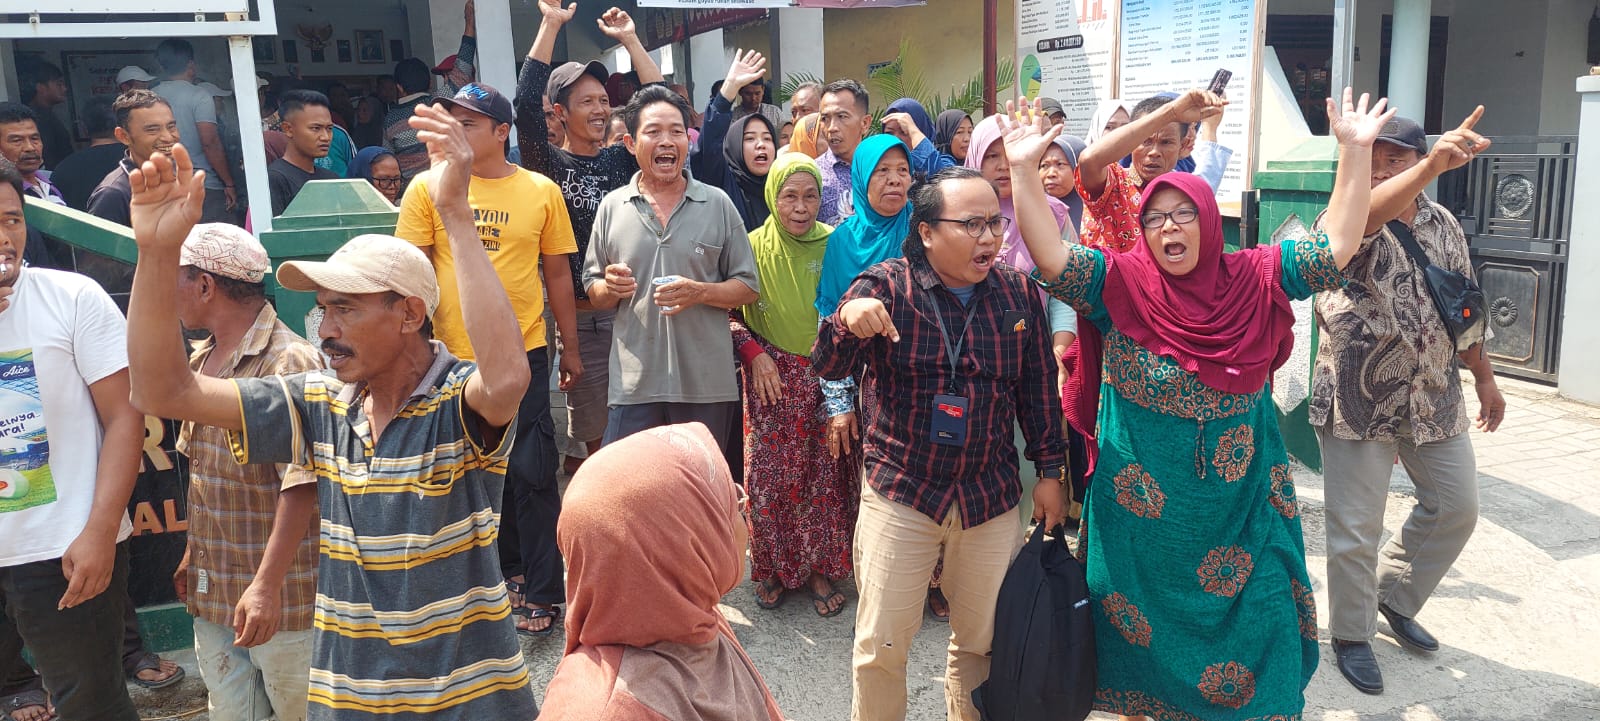 Persyaratan Balon Kades Ditolak, Panitia Pilkades Diprotes Ratusan Warga Desa Sumungkir Tegal 